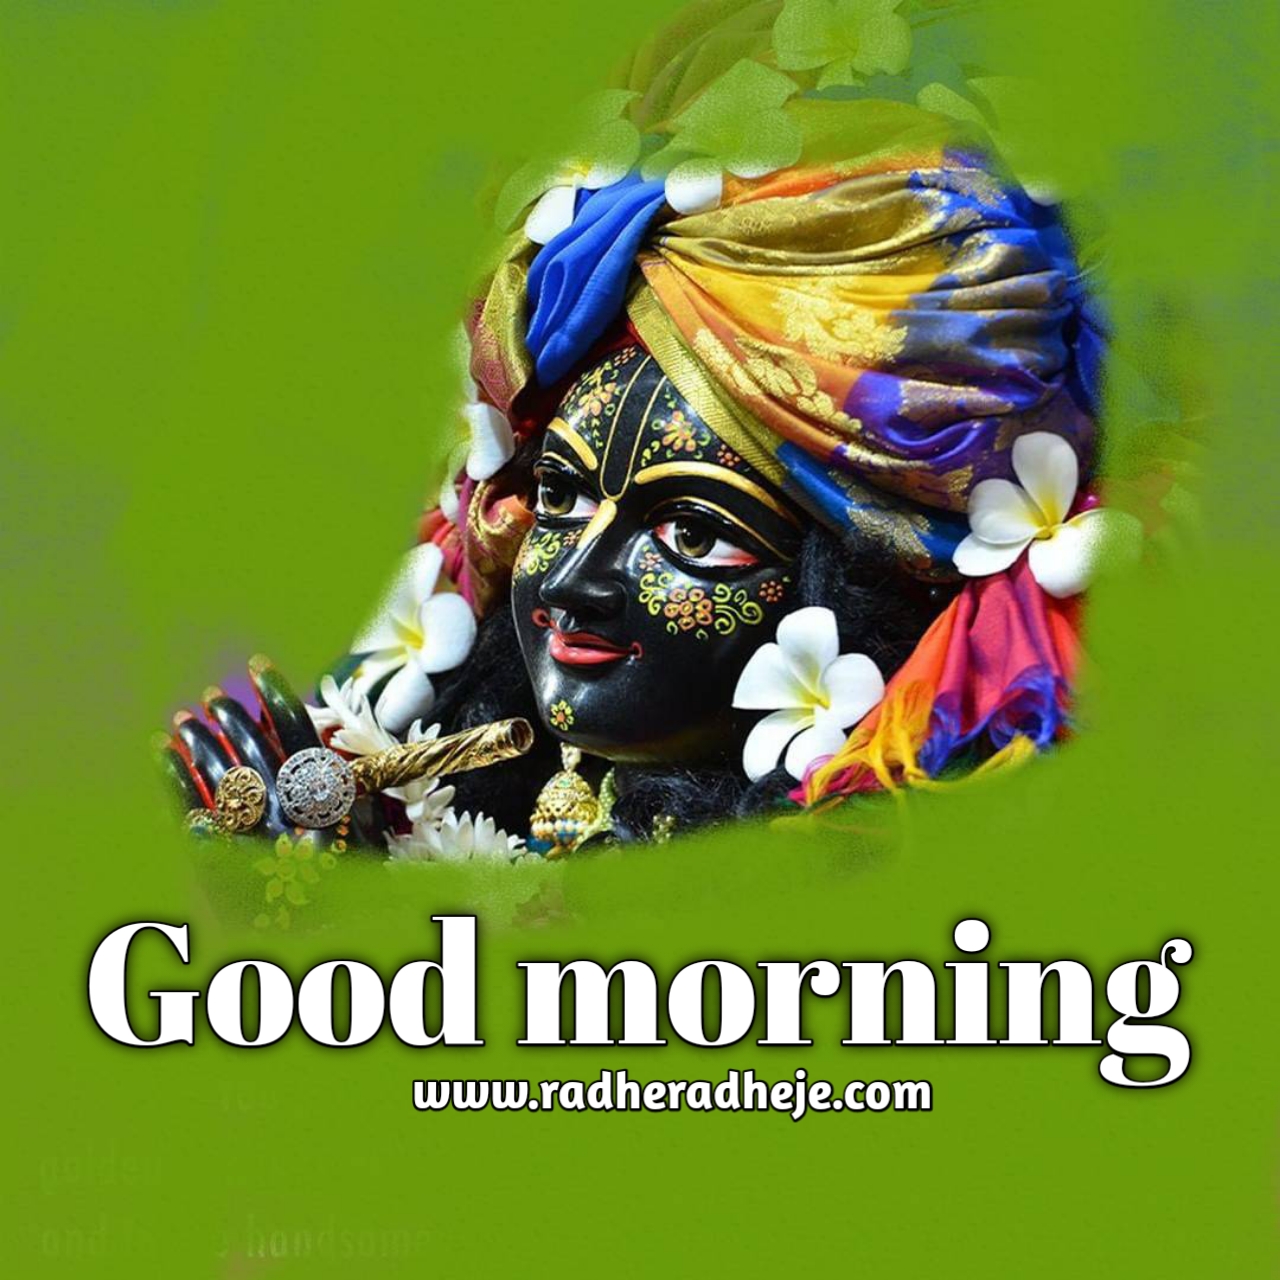 Best Jai Shree Krishna Good Morning Images Download - RadheRadheje